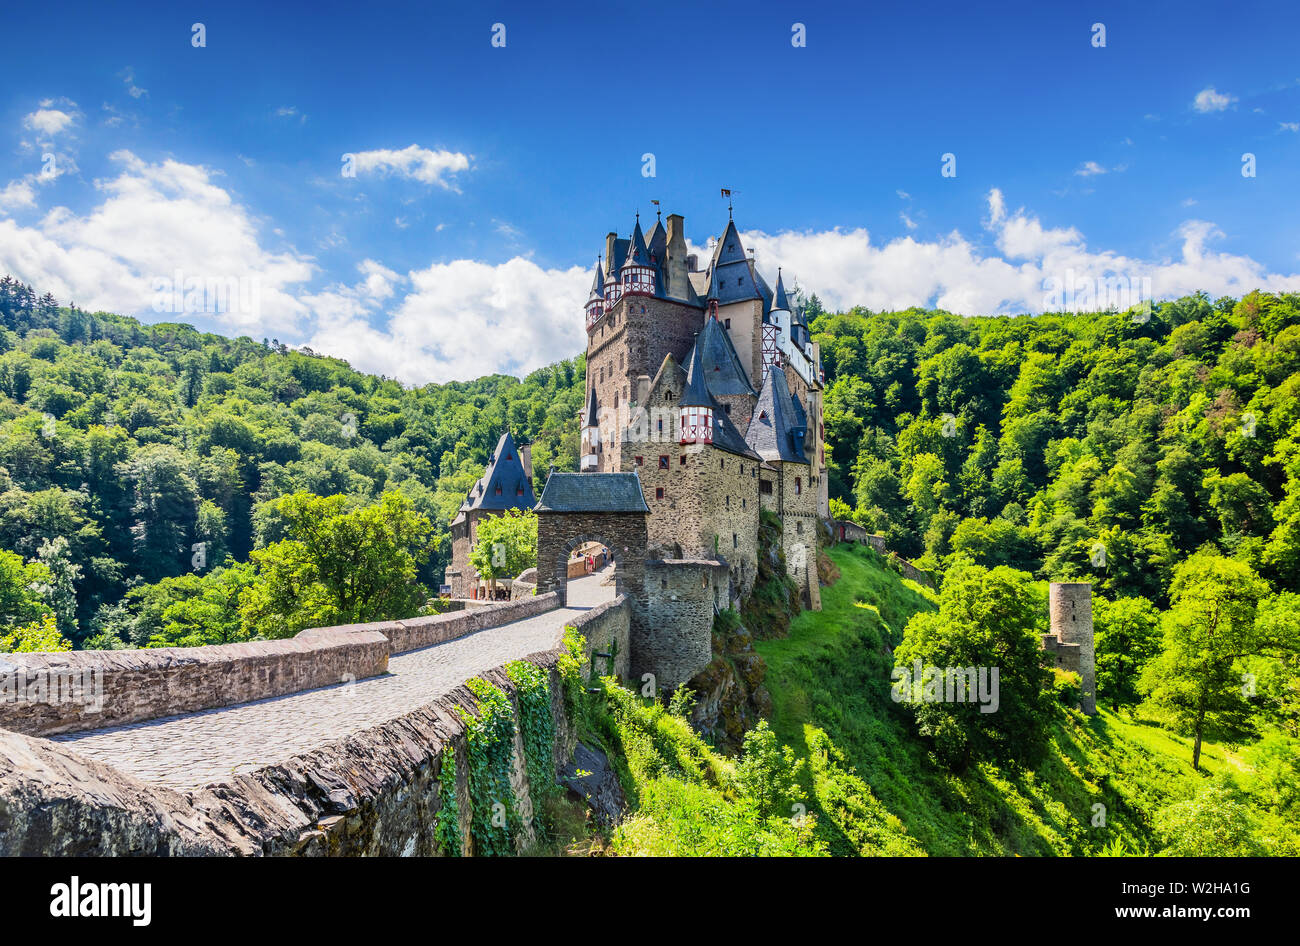 Château d'Eltz ou Burg Eltz. Château médiéval sur les collines au-dessus de la Moselle. La Rhénanie-Palatinat en Allemagne. Banque D'Images